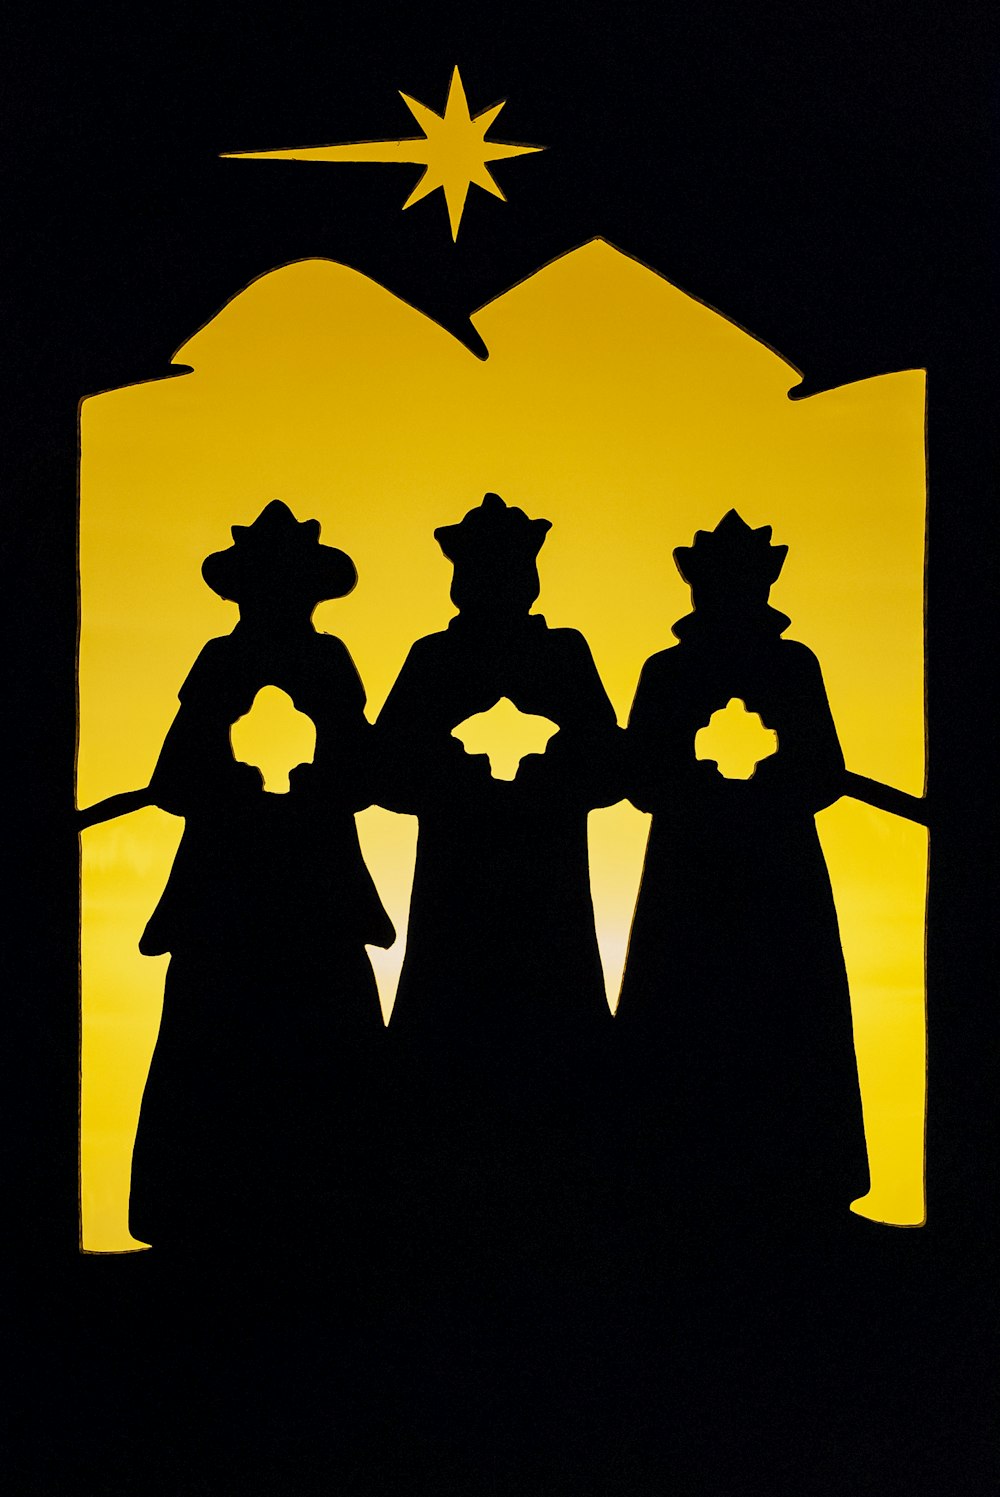 Une silhouette de trois personnes debout devant une étoile